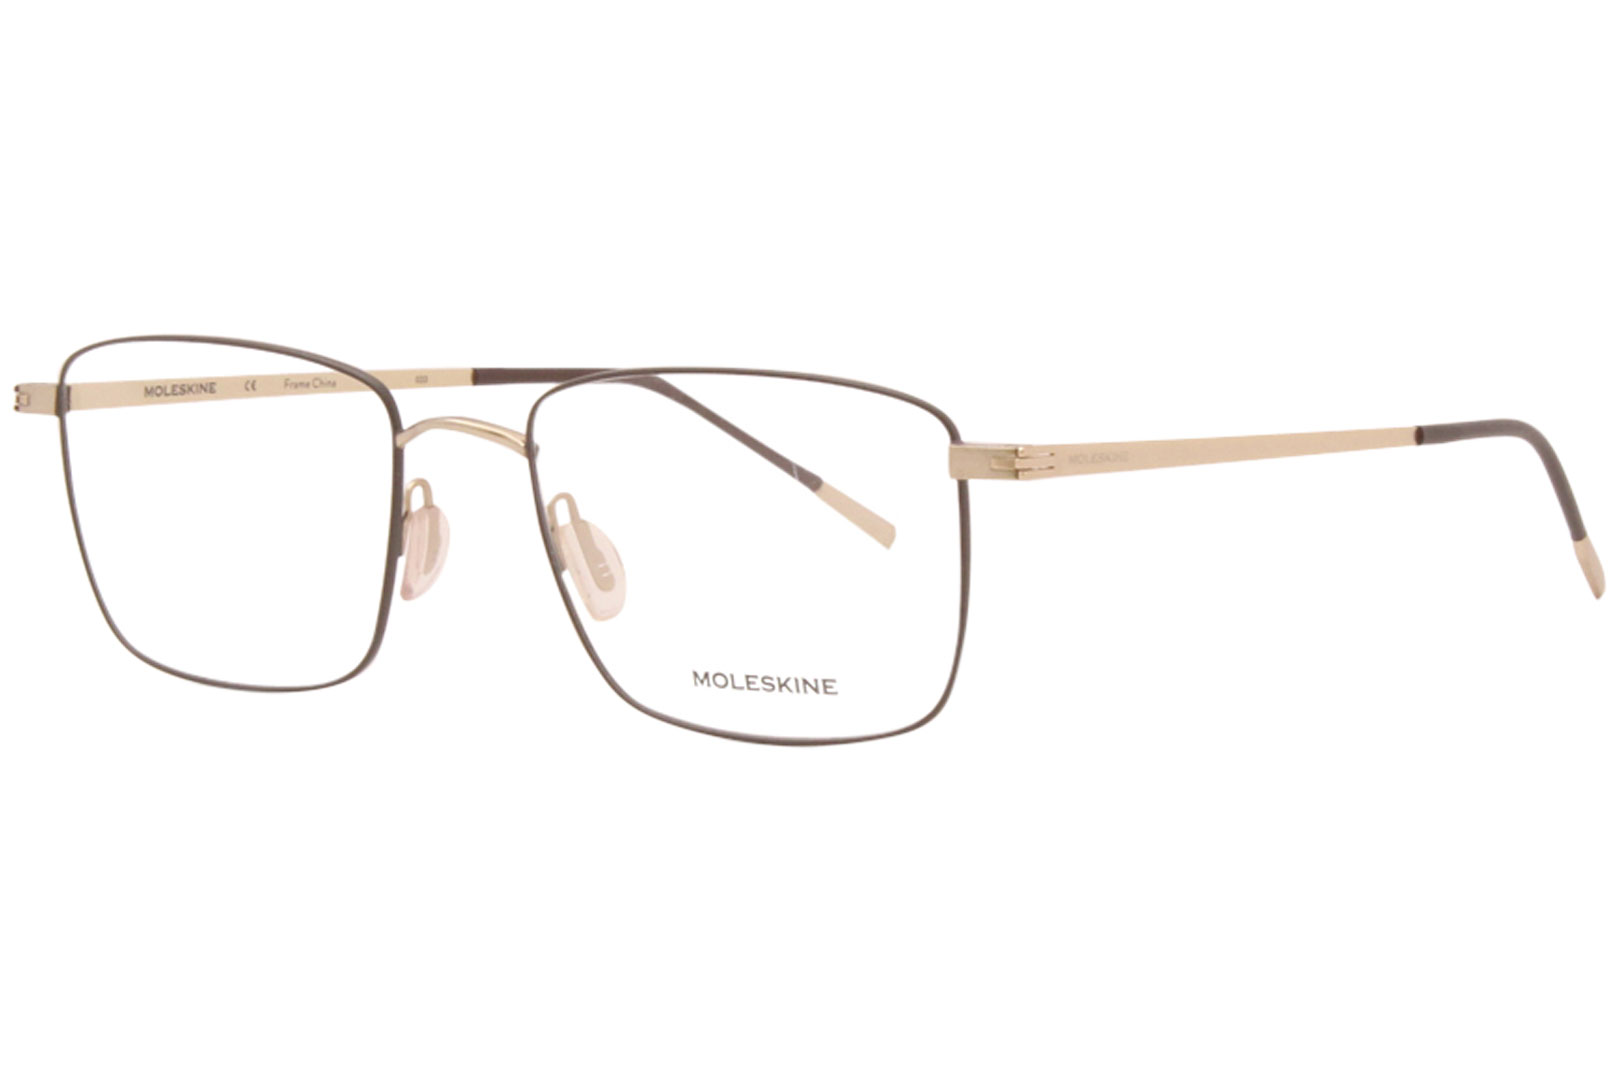 Moleskine MO2130 Eyeglasses Men's Full Rim Rectangular Optical Frame ...